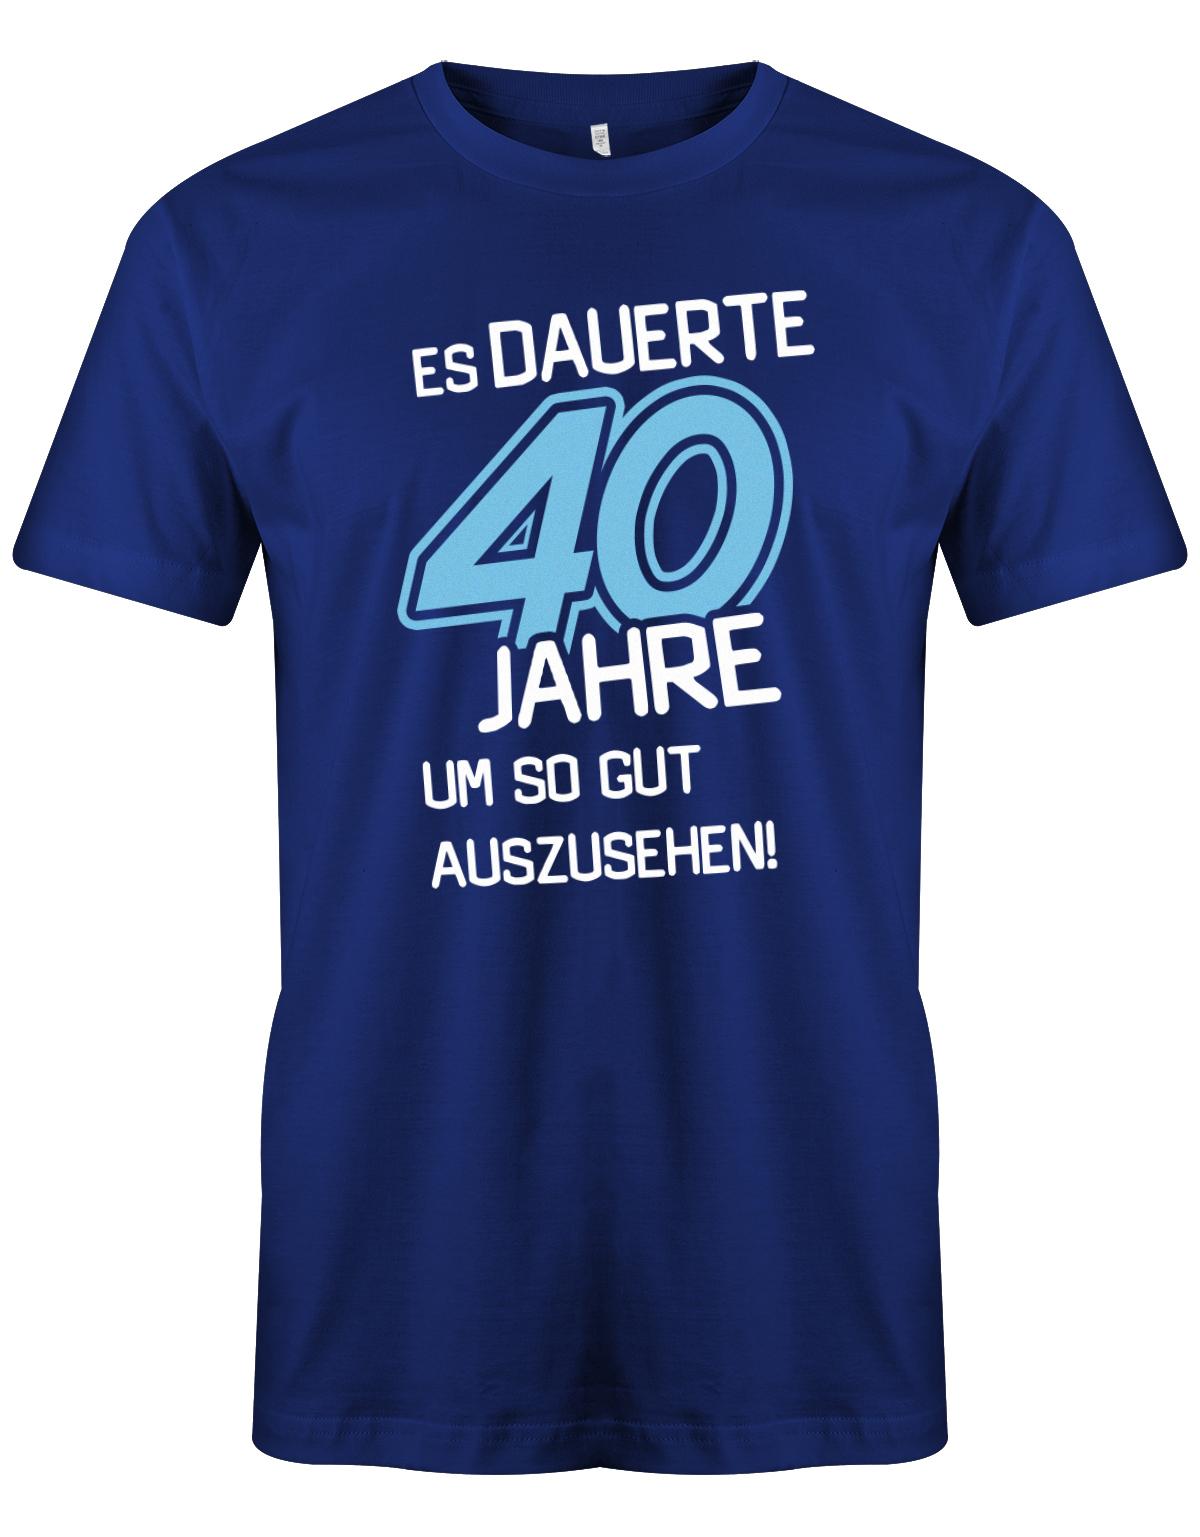 Es dauerte 40 Jahre um so gut auszusehen - T-Shirt 40 Geburtstag Männer - 1983 myShirtStore Royalblau